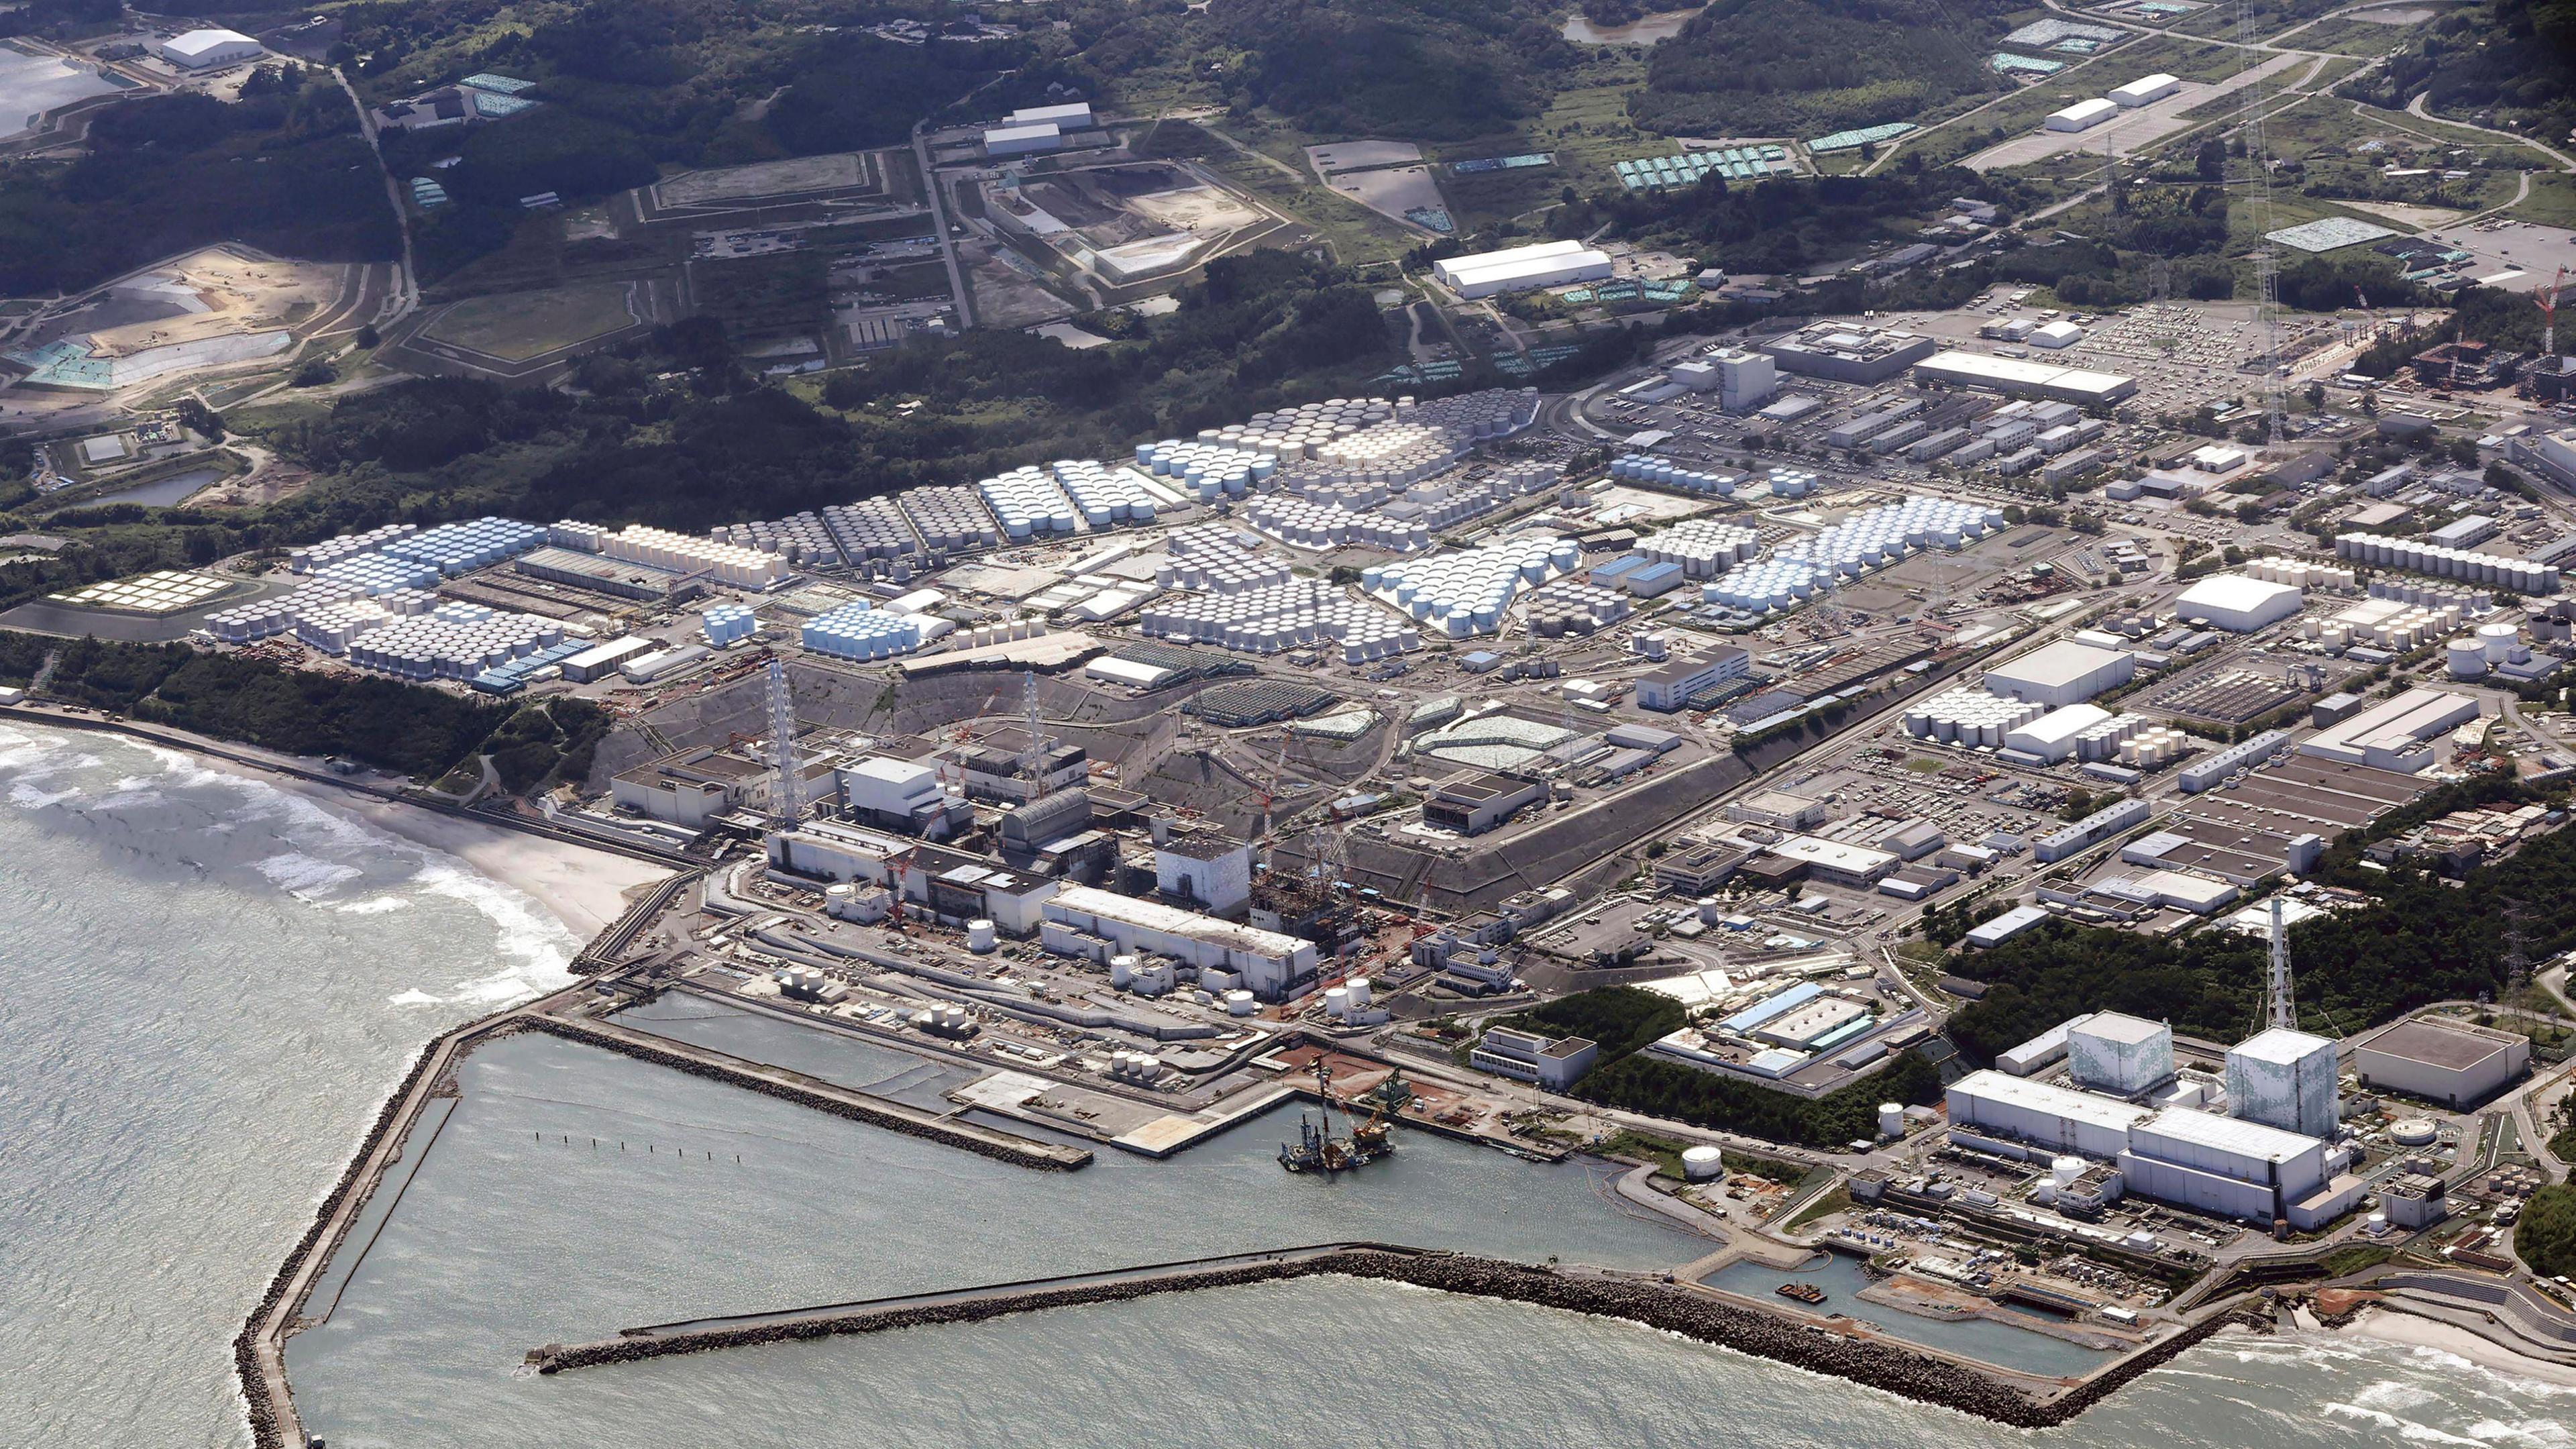 Diese Luftaufnahme zeigt das Kernkraftwerk Fukushima Daiichi